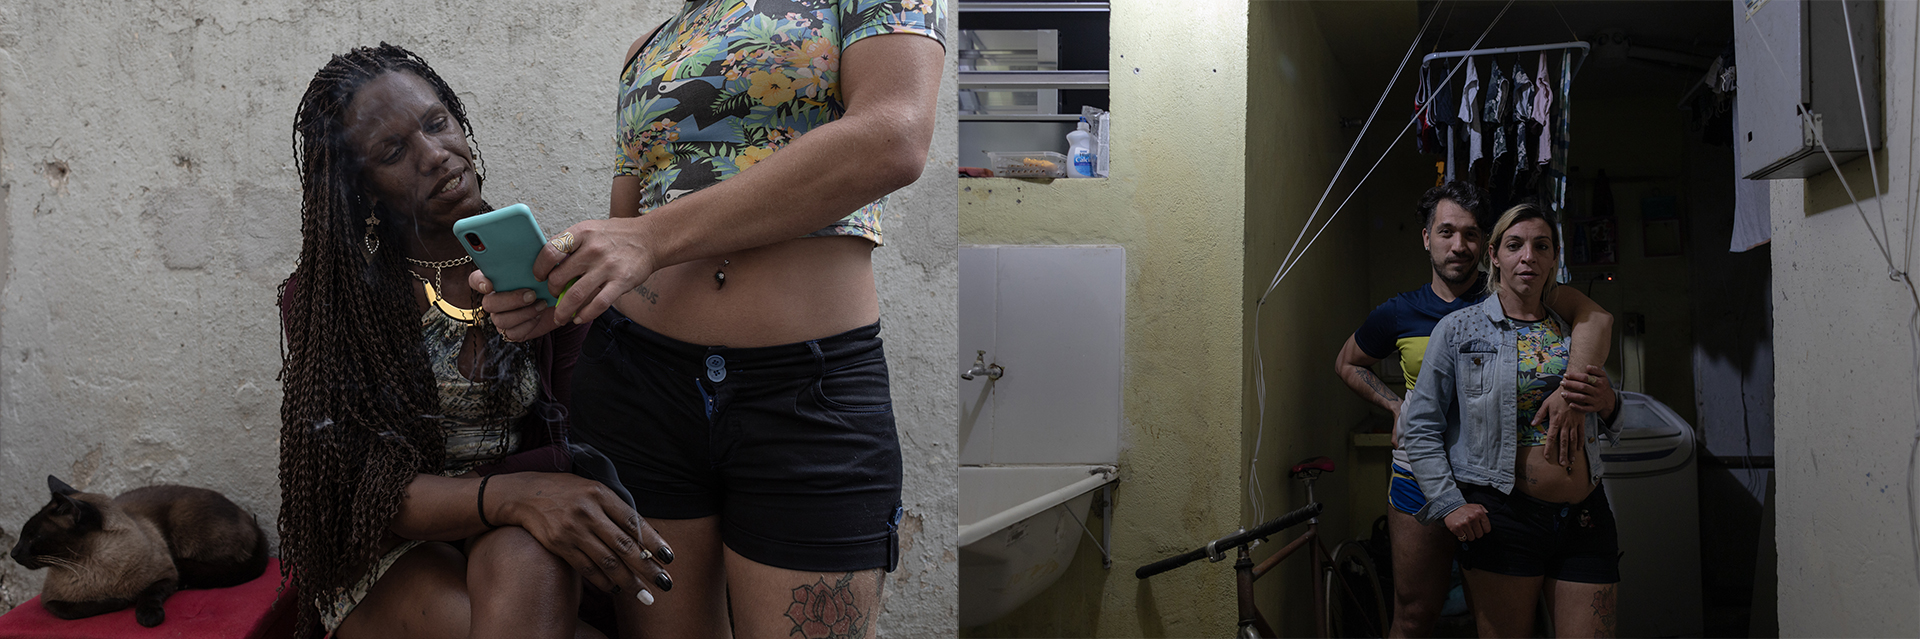 À esq., Aline mostra imagens do seu celular para Savanna durante churrasco na casa de Murilo e Victor, na zona norte de São Paulo. Elas se conheceram na Casa Florescer II; ambas saíram da casa e eventualmente se encontram. À dir, Aline posa com Murilo.